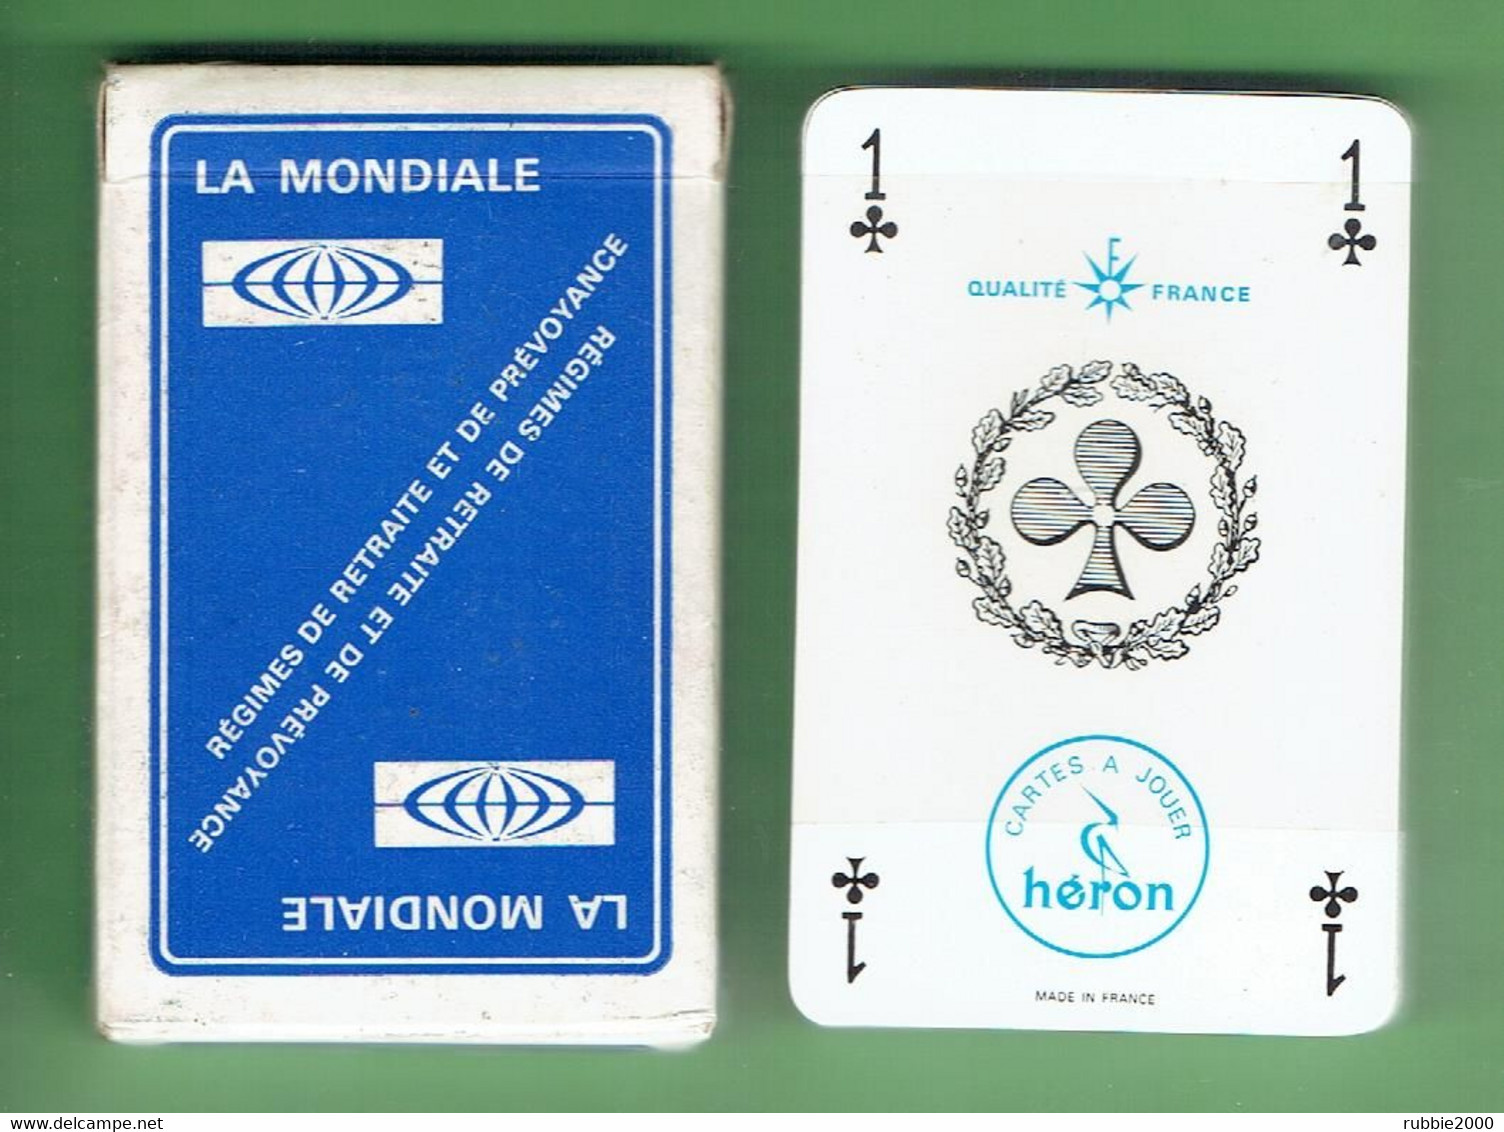 LA MONDIALE REGIMES DE RETRAITE ET DE PREVOYANCE FABRICANT HERON JEU DE 32 CARTES A JOUER - 32 Cards